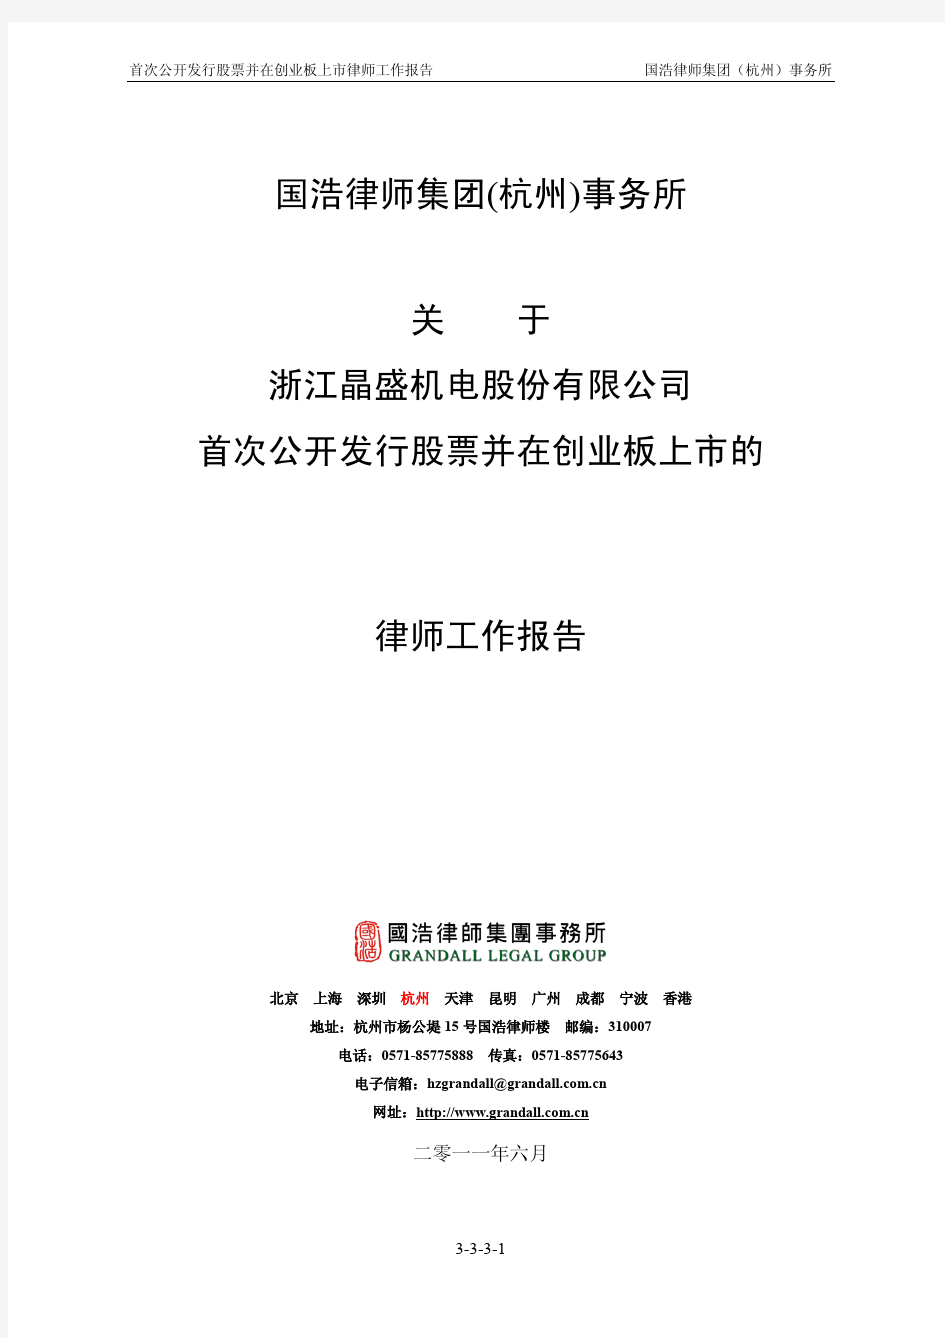 晶盛机电：国浩律师集团(杭州)事务所关于公司首次公开发行股票并在创业板上市的律师工作报告